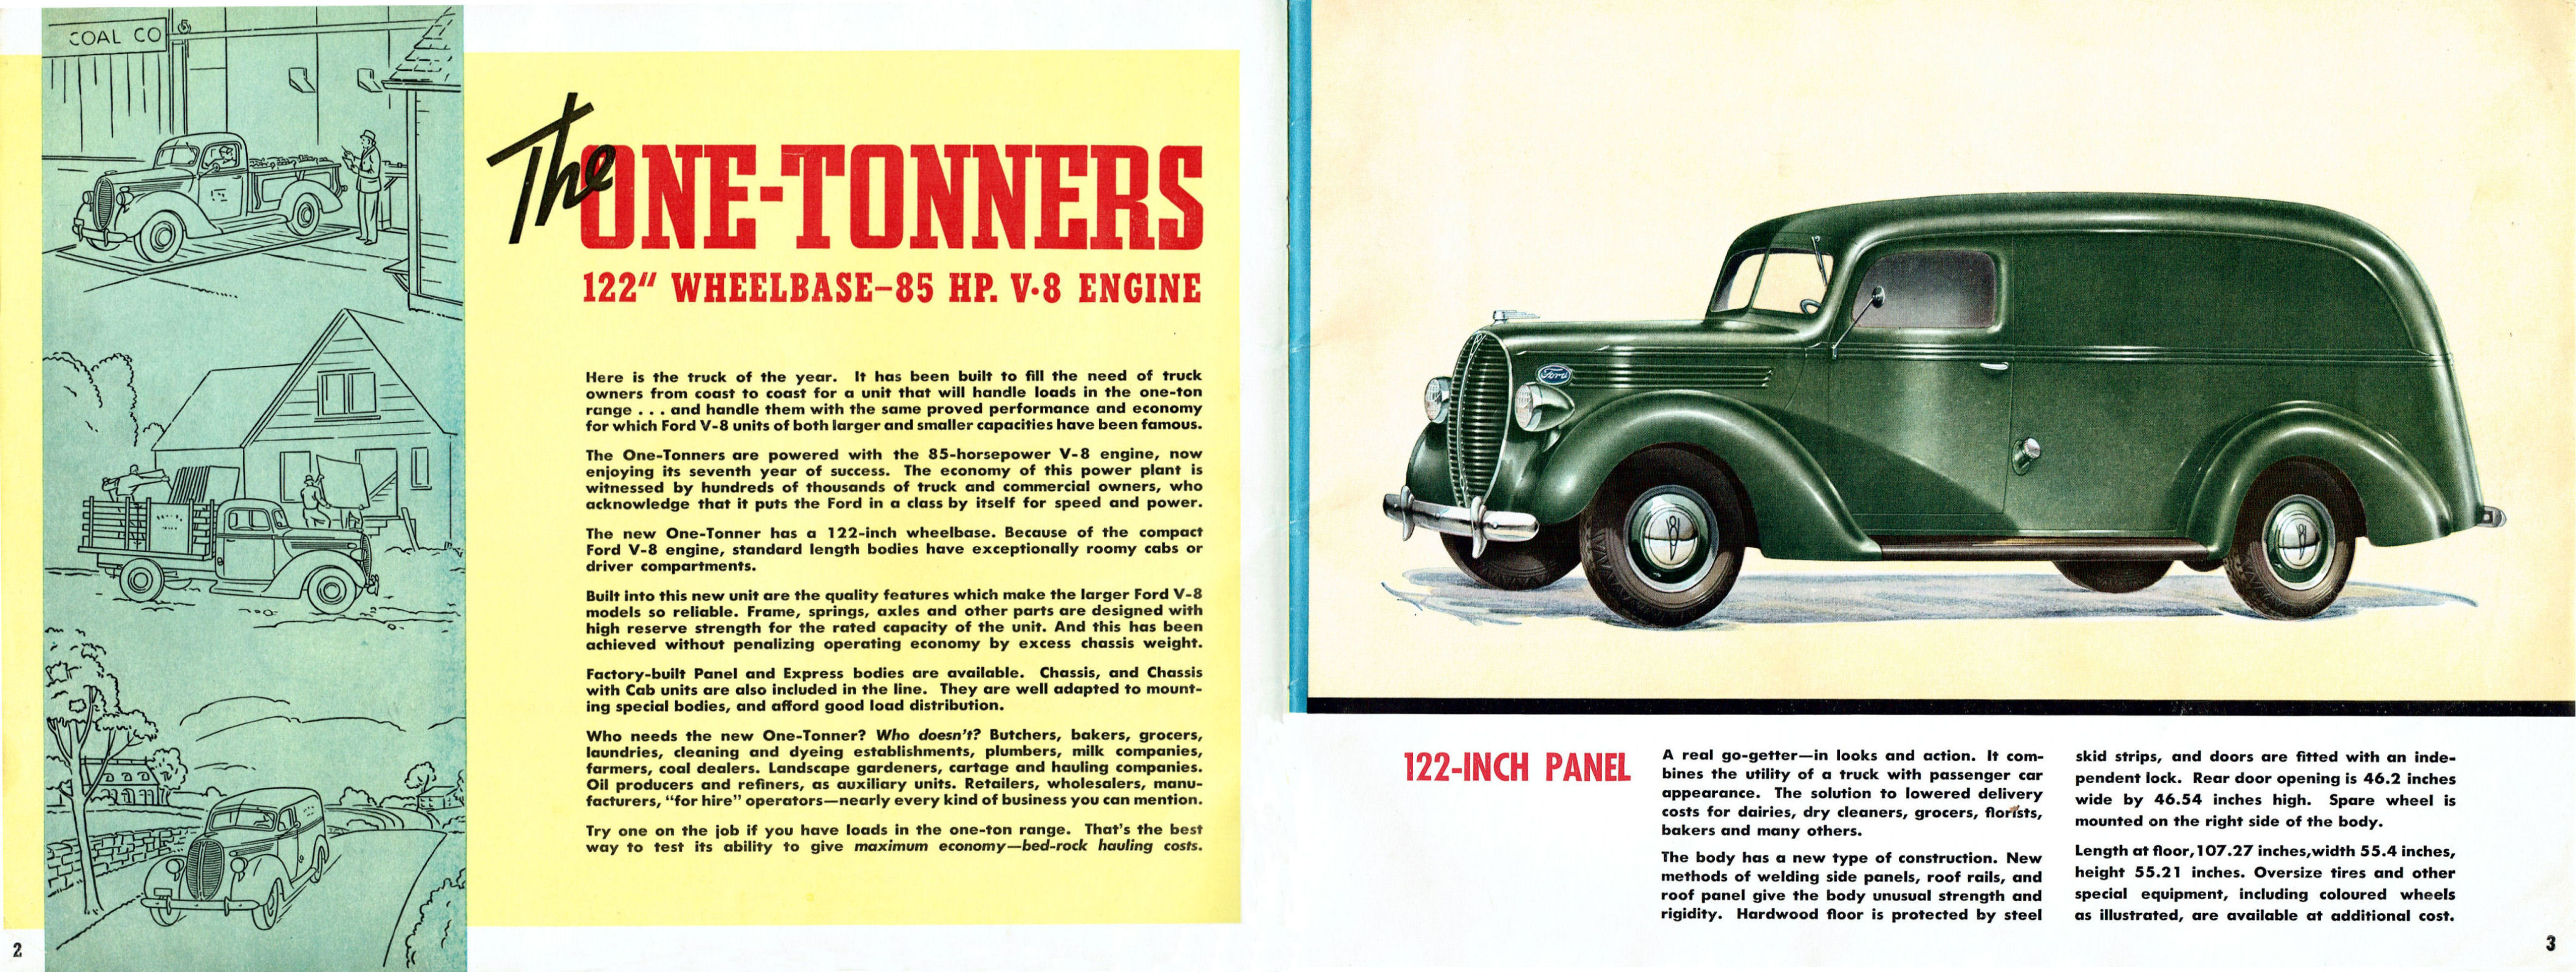 1938_Ford_Truck_Full_Line_Cdn-02-03